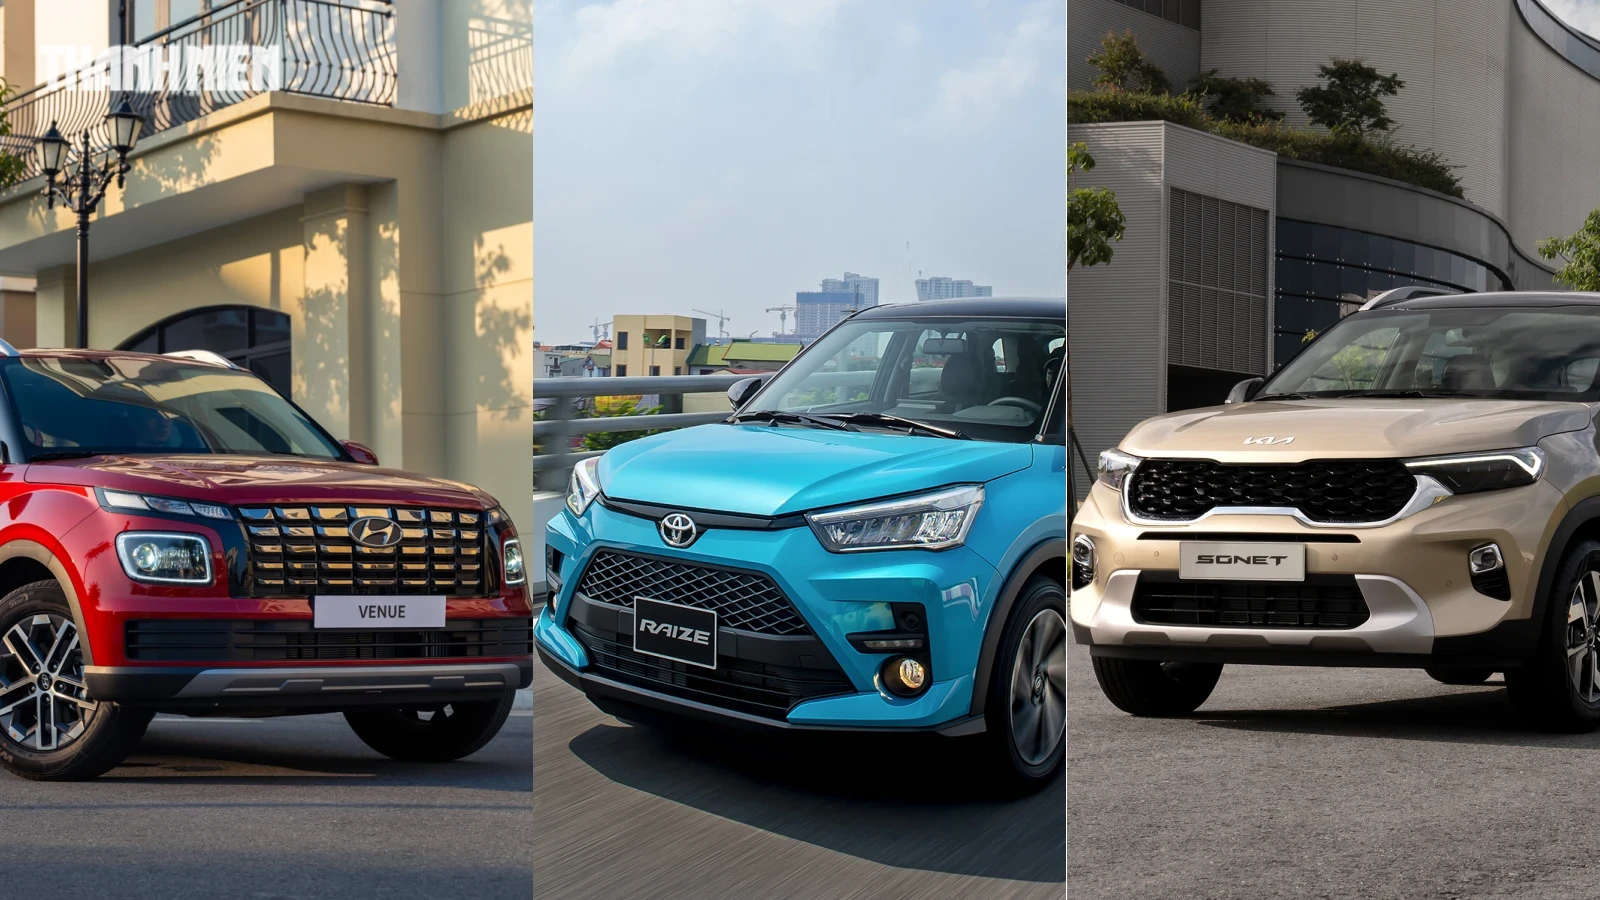 Ô tô gầm cao cỡ nhỏ, dưới 600 triệu: Chọn Kia Sonet, Toyota Raize hay Hyundai Venue?